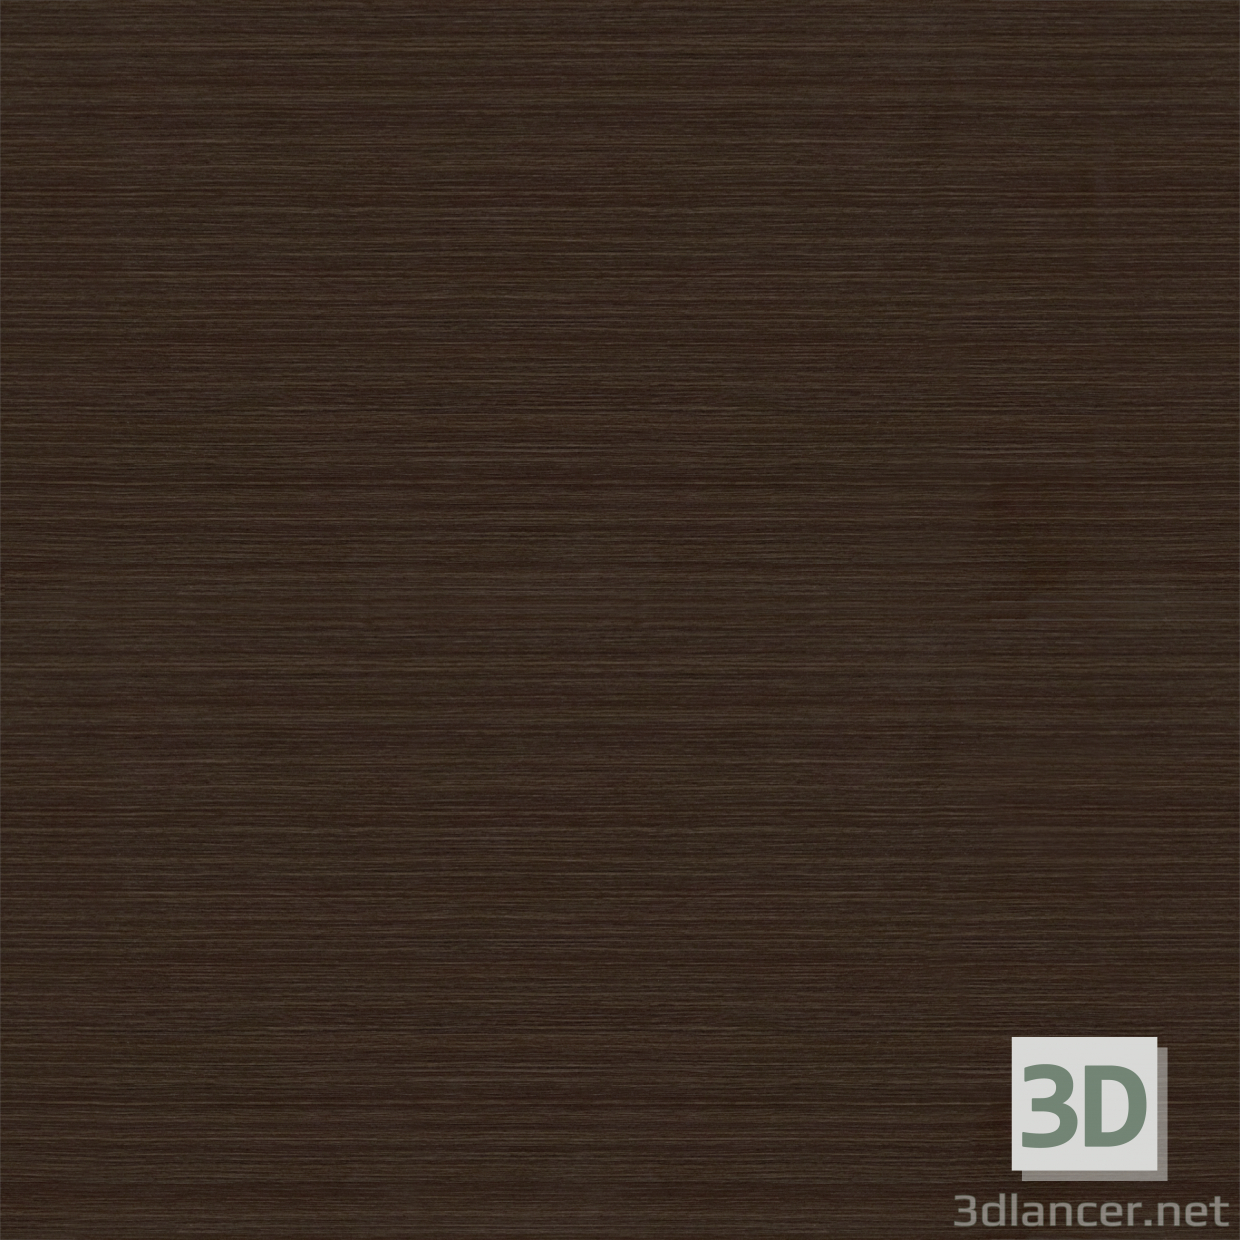 Texture Door textures (part 1) free download - image